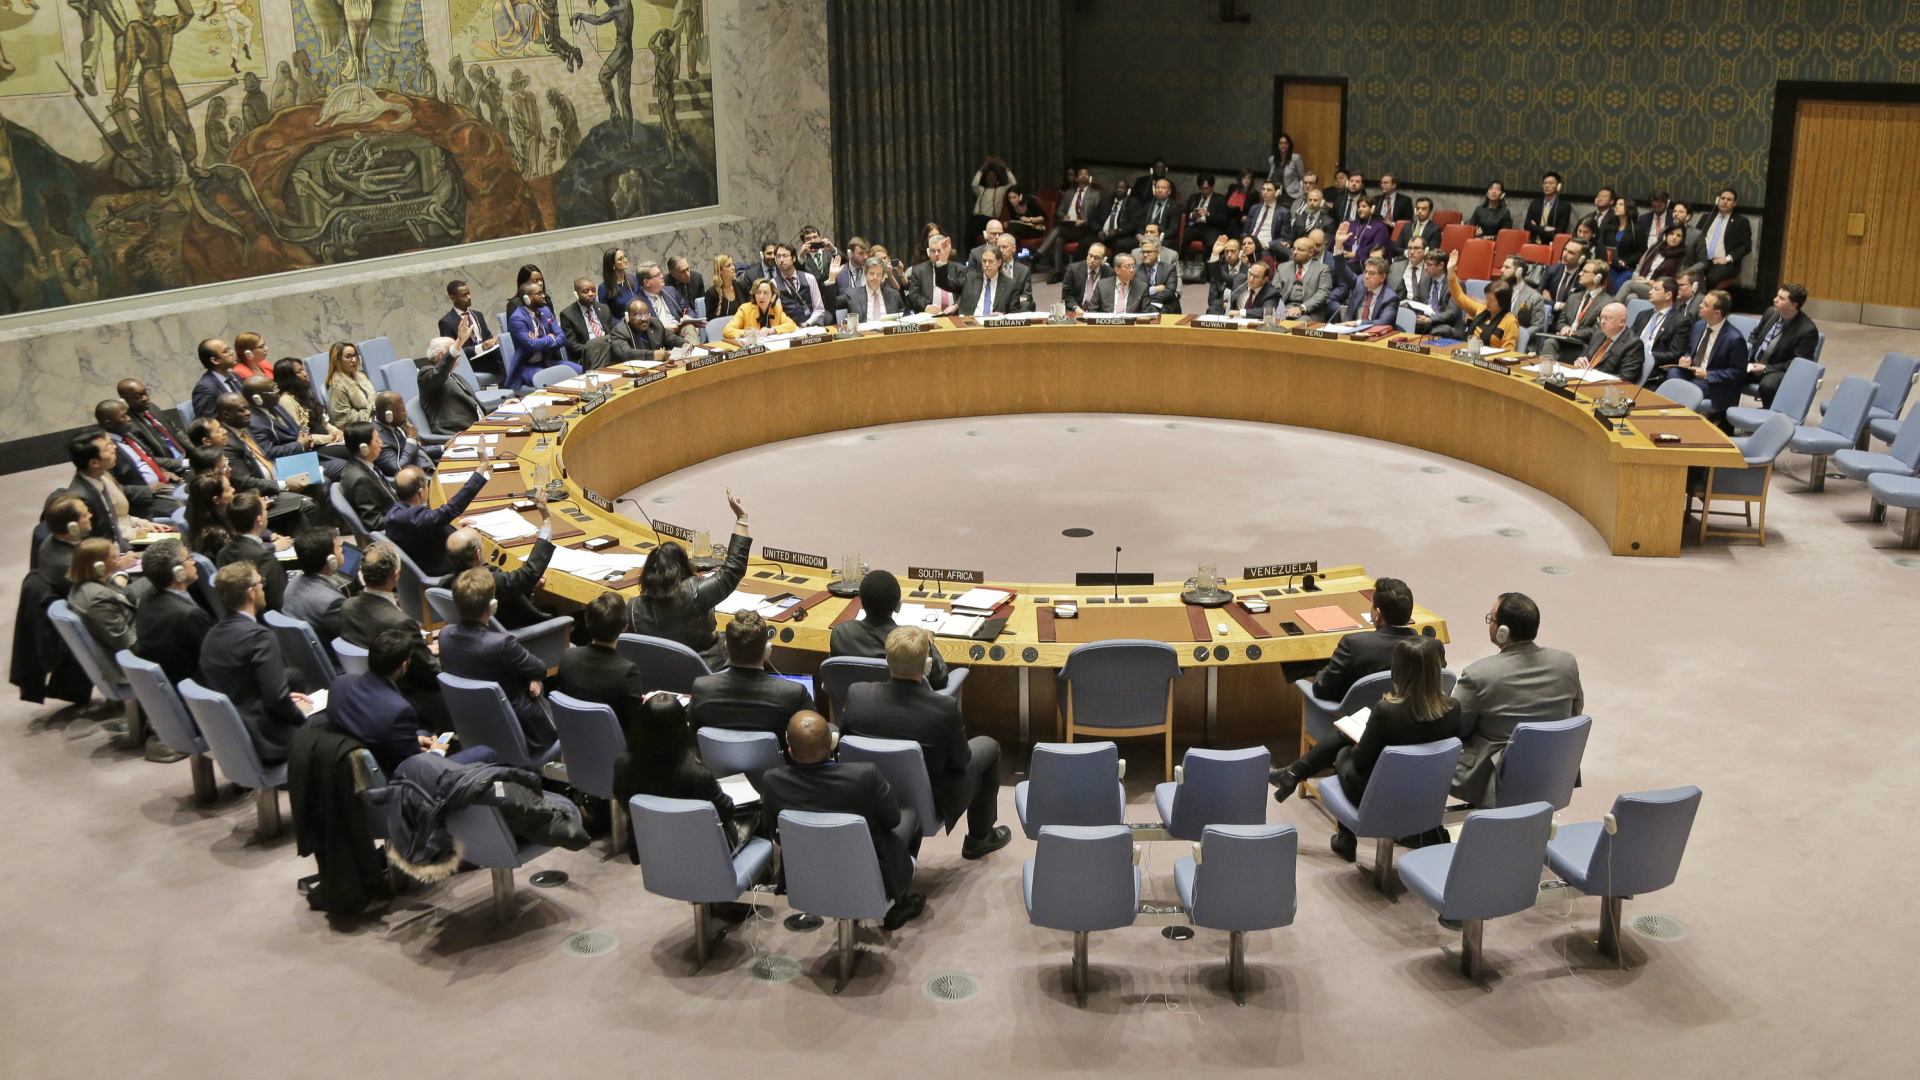 Die Mitglieder des UN-Sicherheitsrates stimmen über eine Resolution zu Venezuela ab. | Bildquelle: dpa